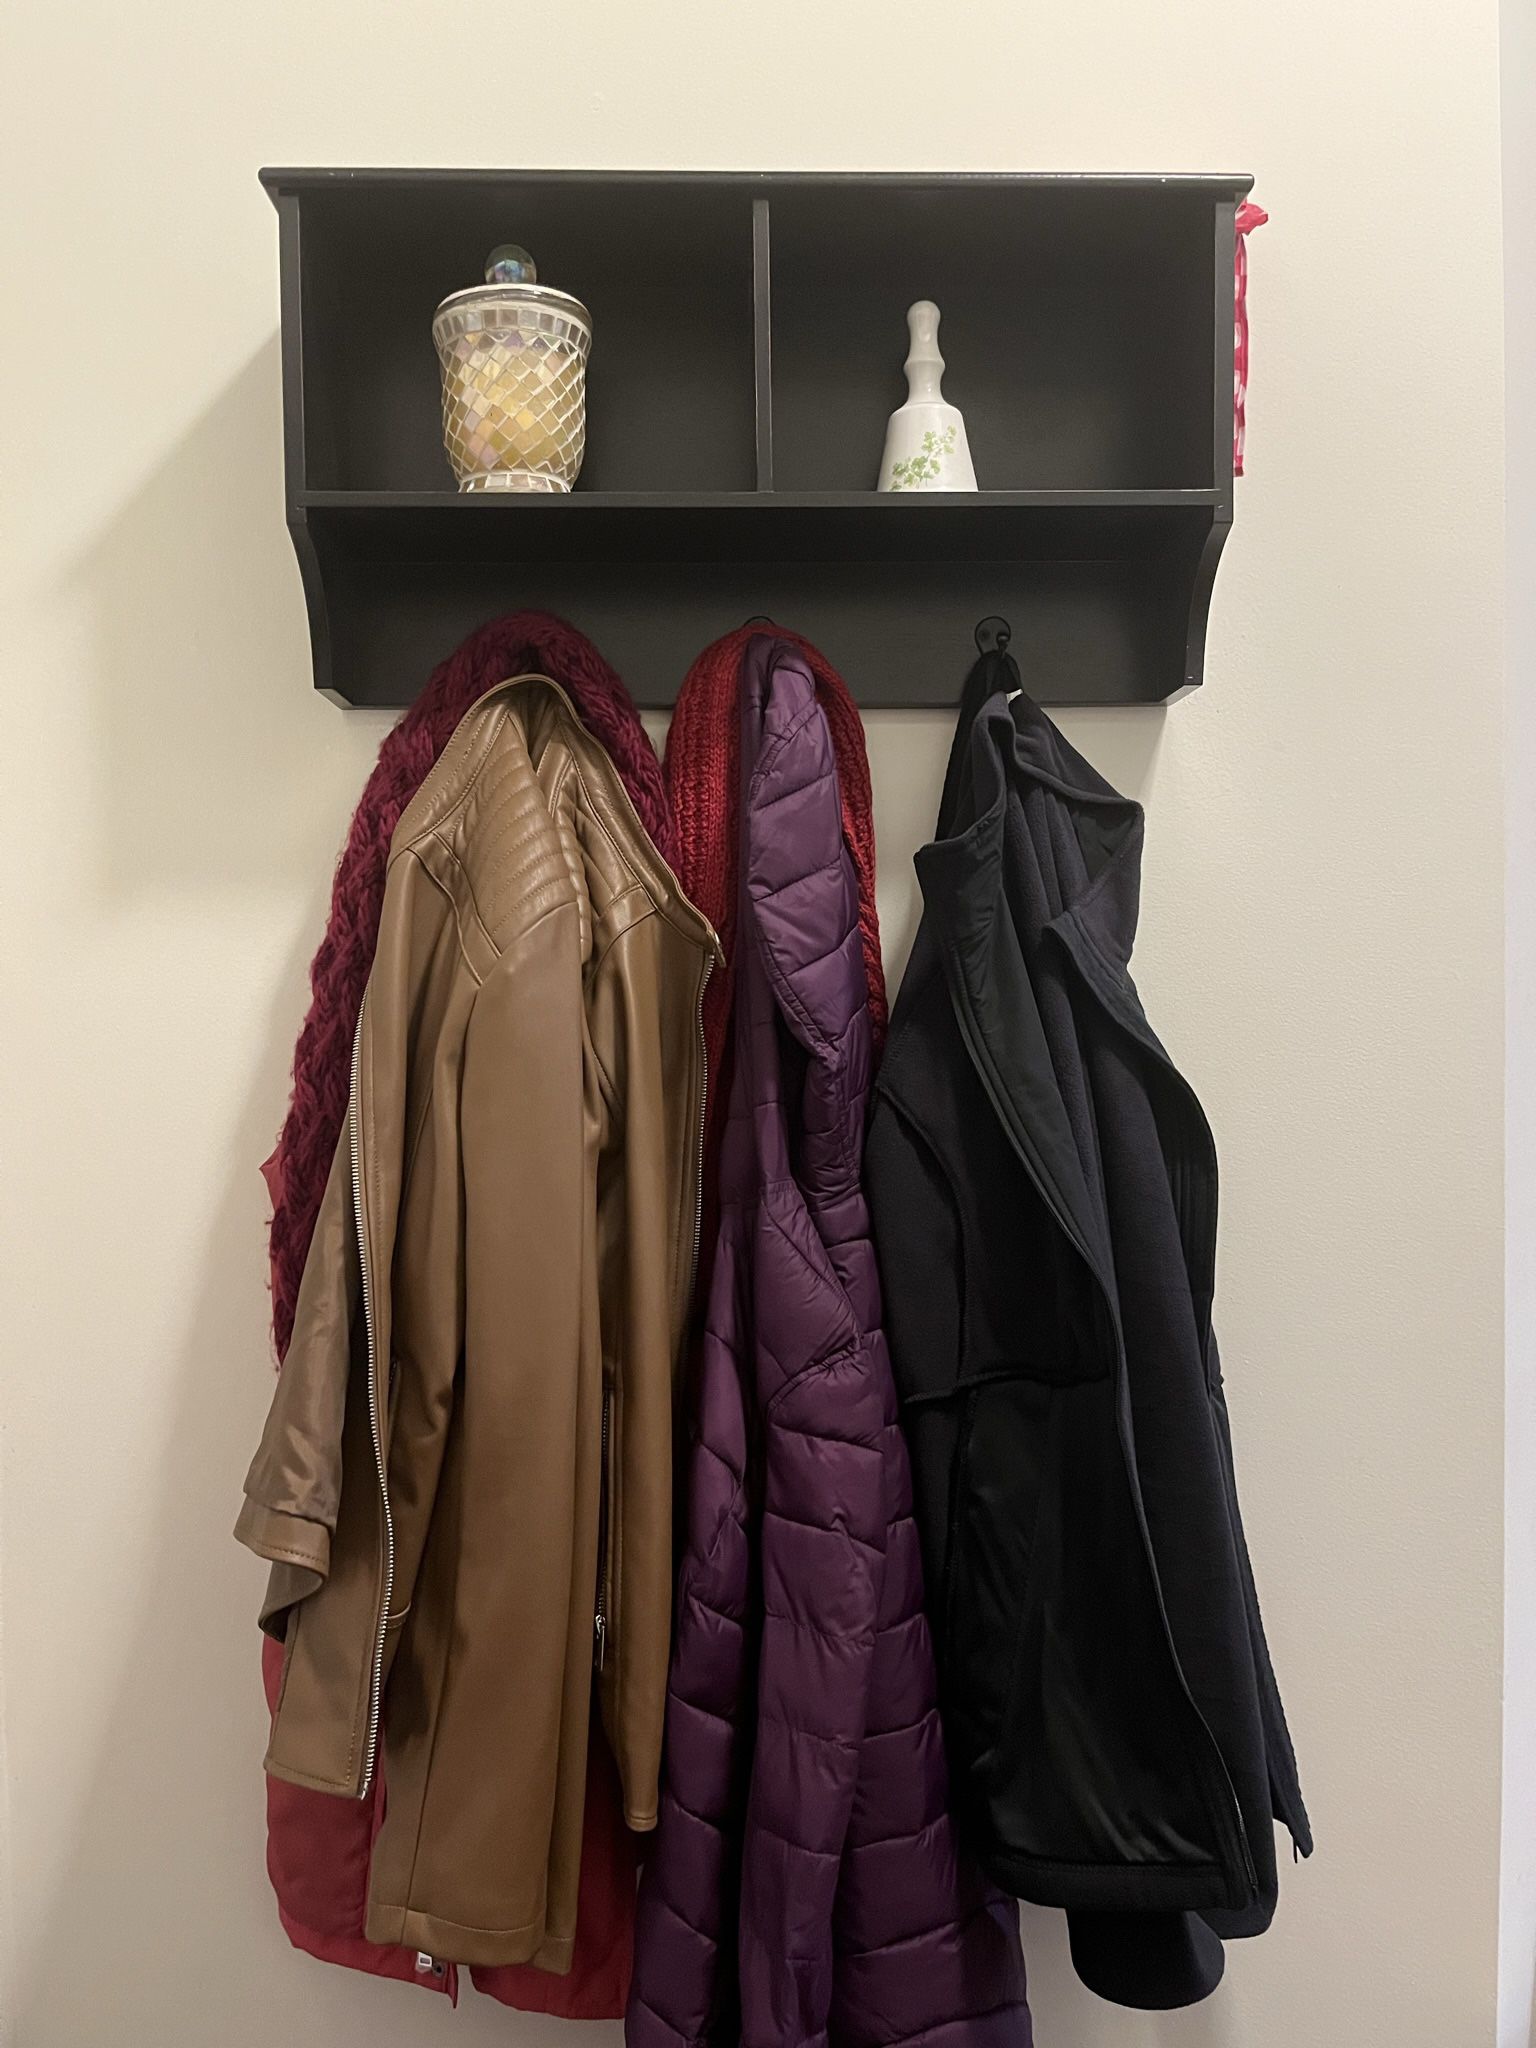 Wall Mounted Coat Rack With Shelf